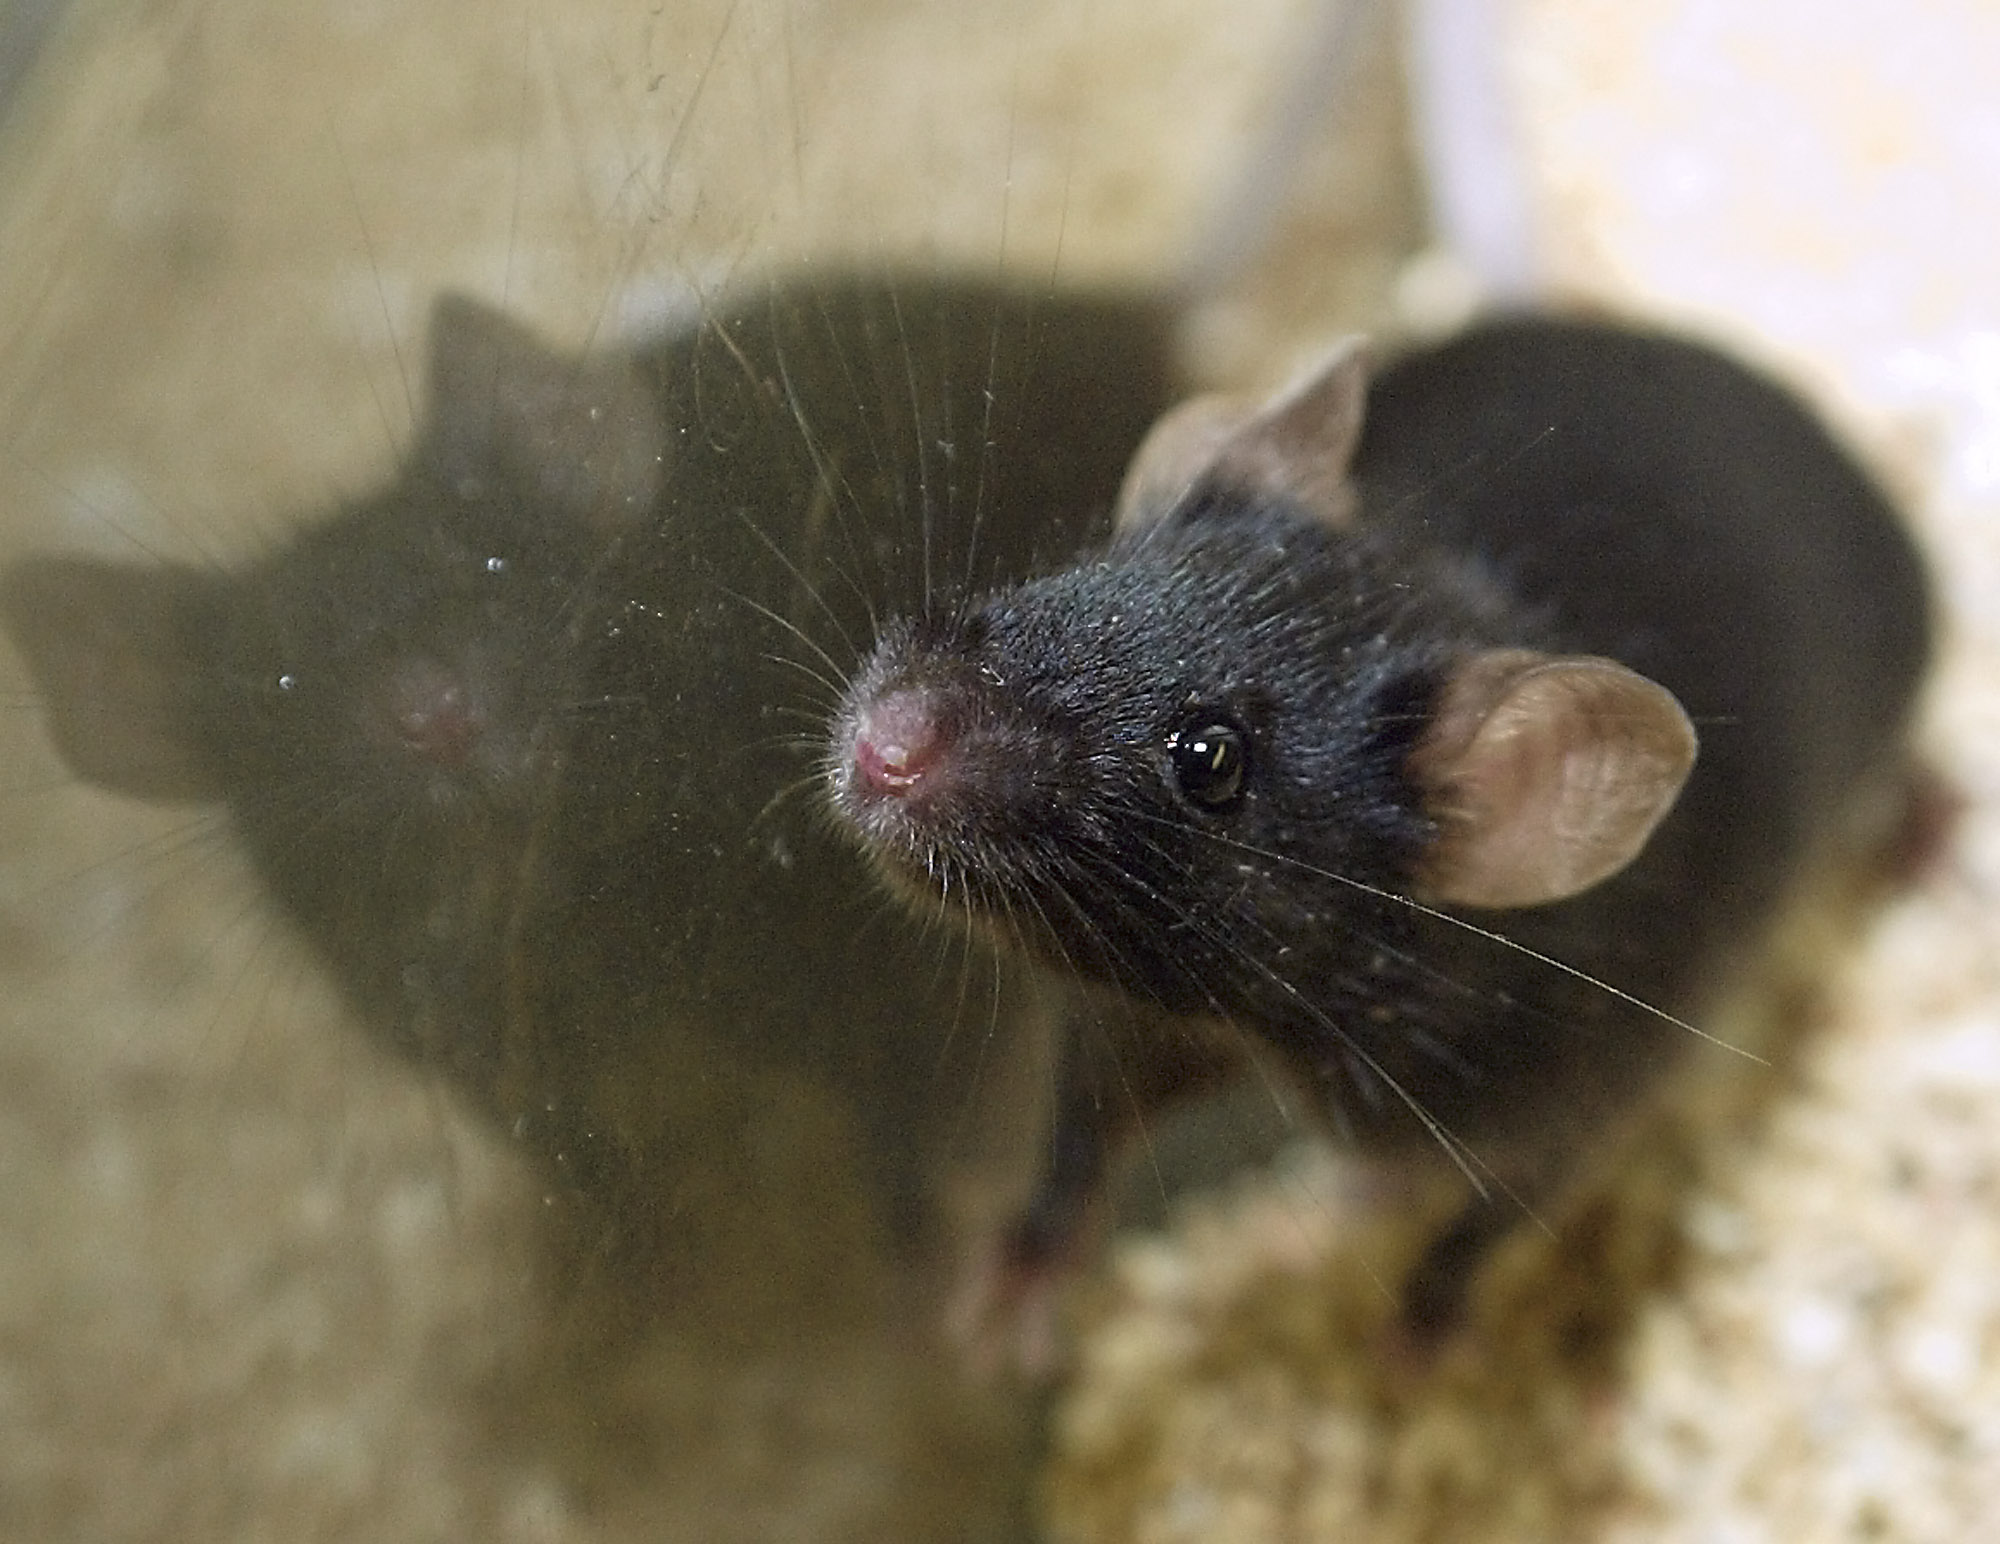 Do mothballs keep rats away?